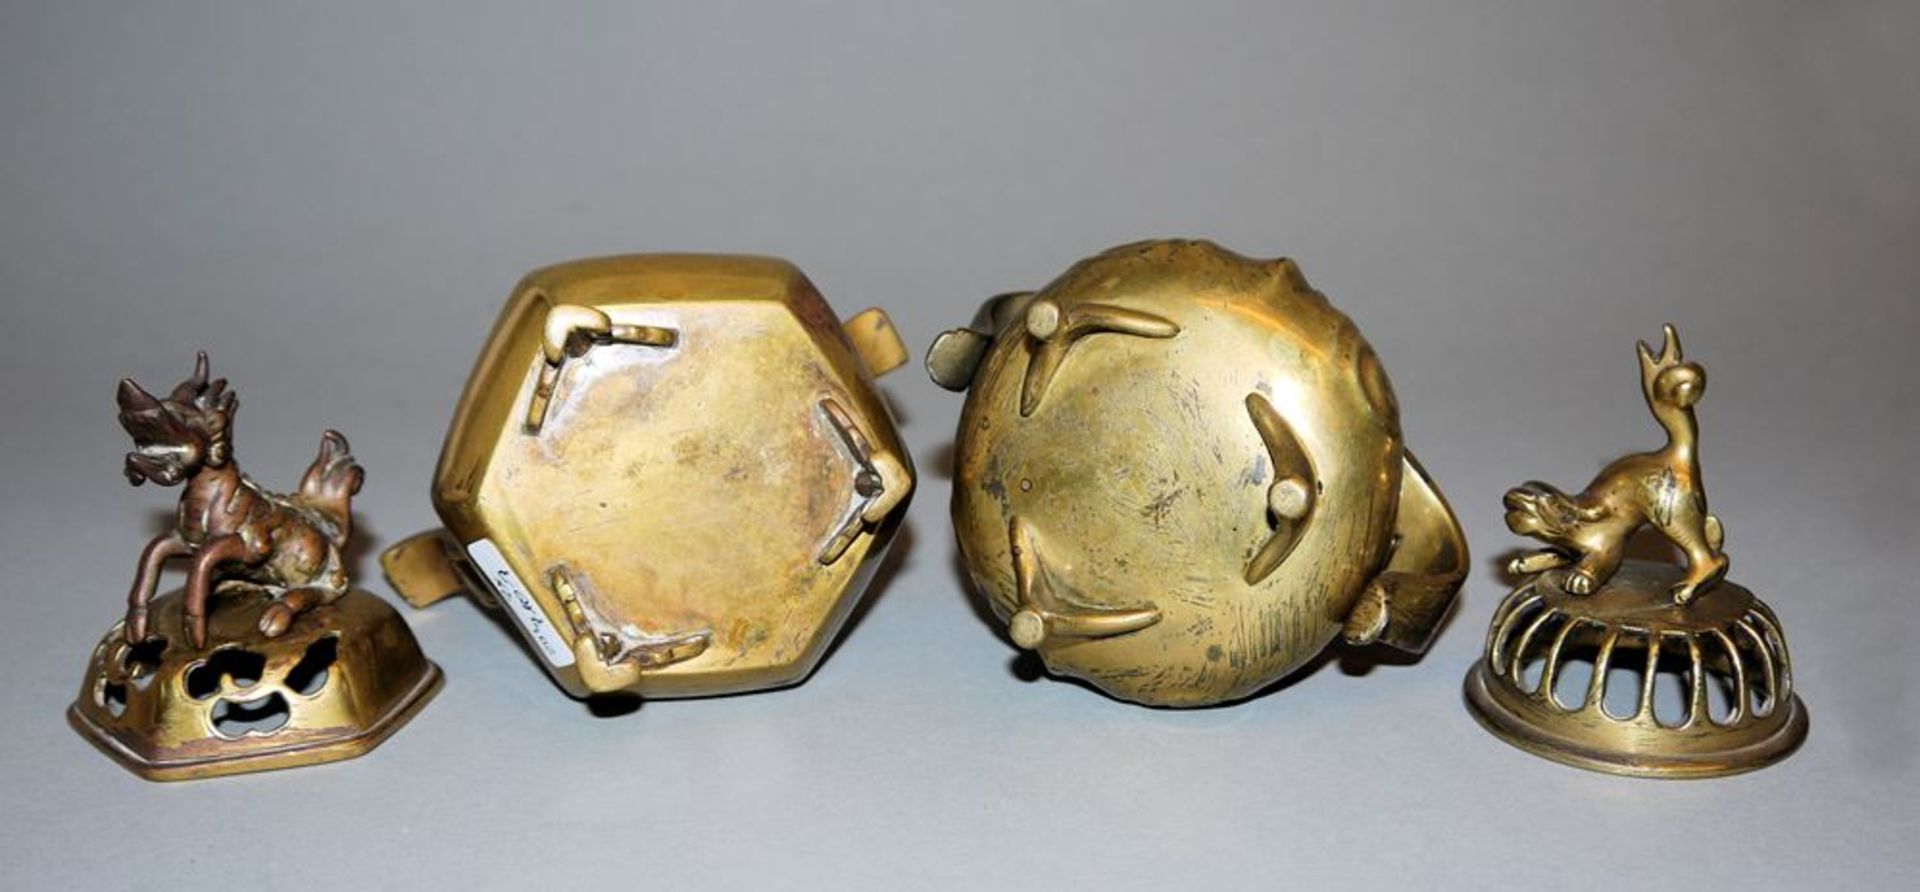 Zwei kleine Weihrauchgefäße aus goldfarbener Bronze, späte Qing-Zeit, China 19. Jh. - Image 2 of 2